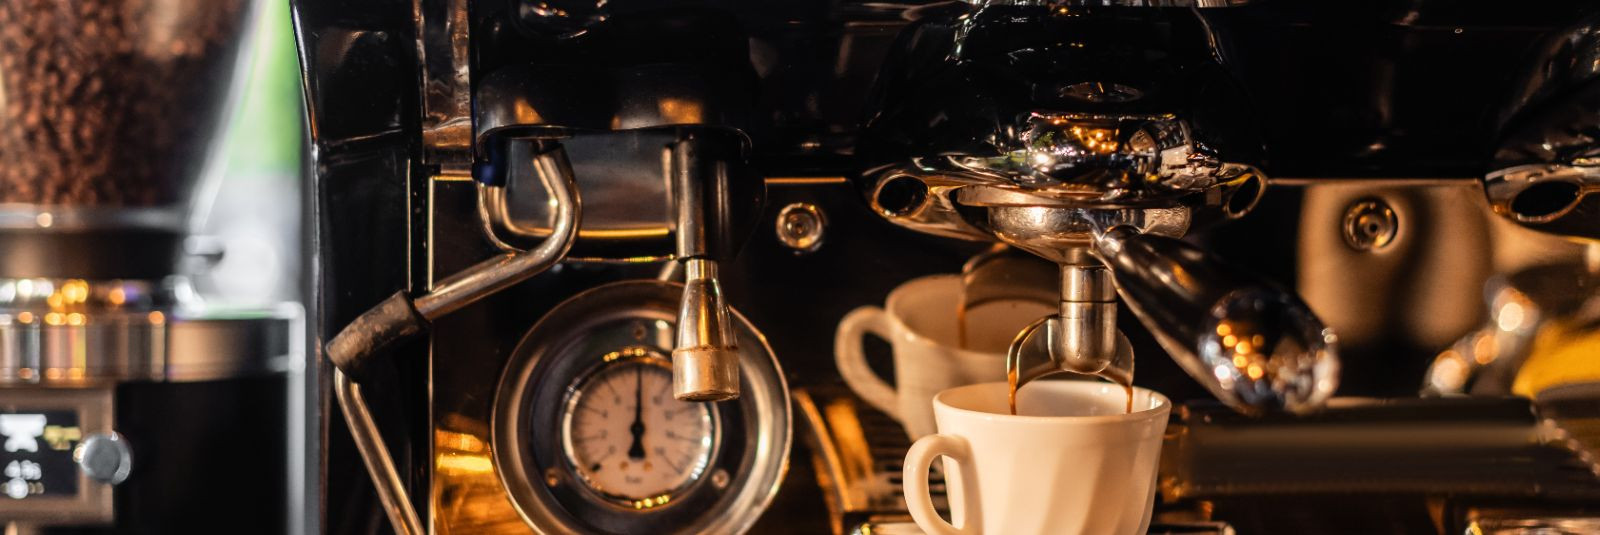 Kohvimasina regulaarne hooldus on oluline, et tagada masina töökindlus ja hea kohvi maitse. Kuidas aga hooldada oma kohvimasinat korrektselt?Esiteks, puhasta om